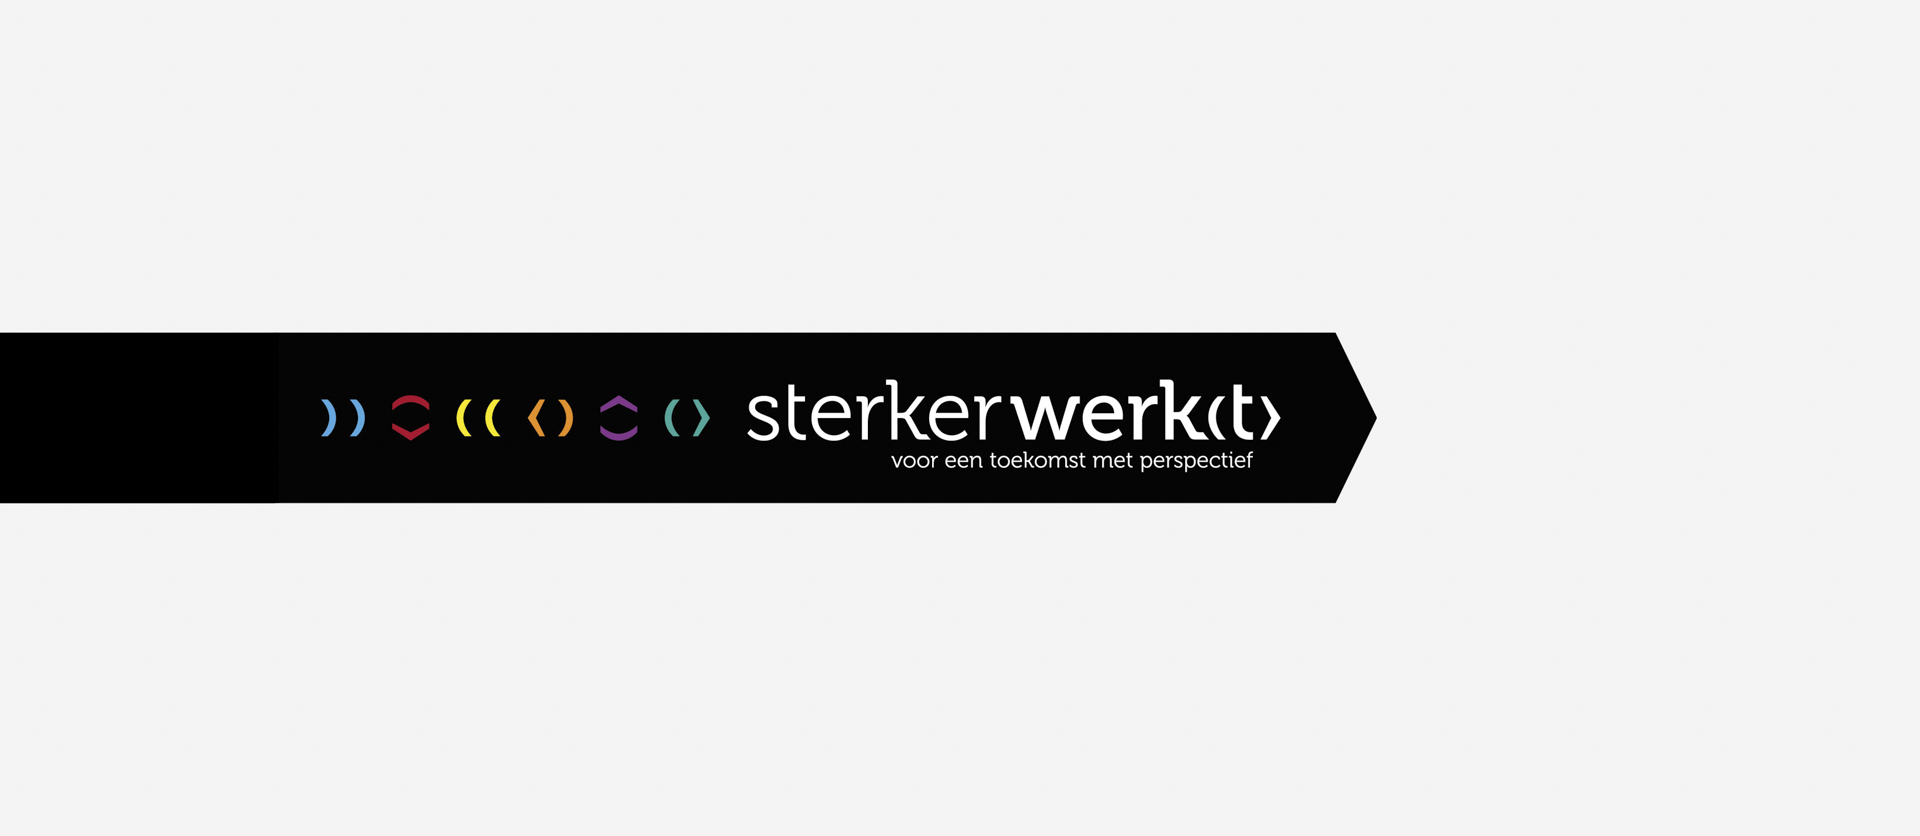 Het logo van Sterker Werkt, de basis van de nieuwe identiteit